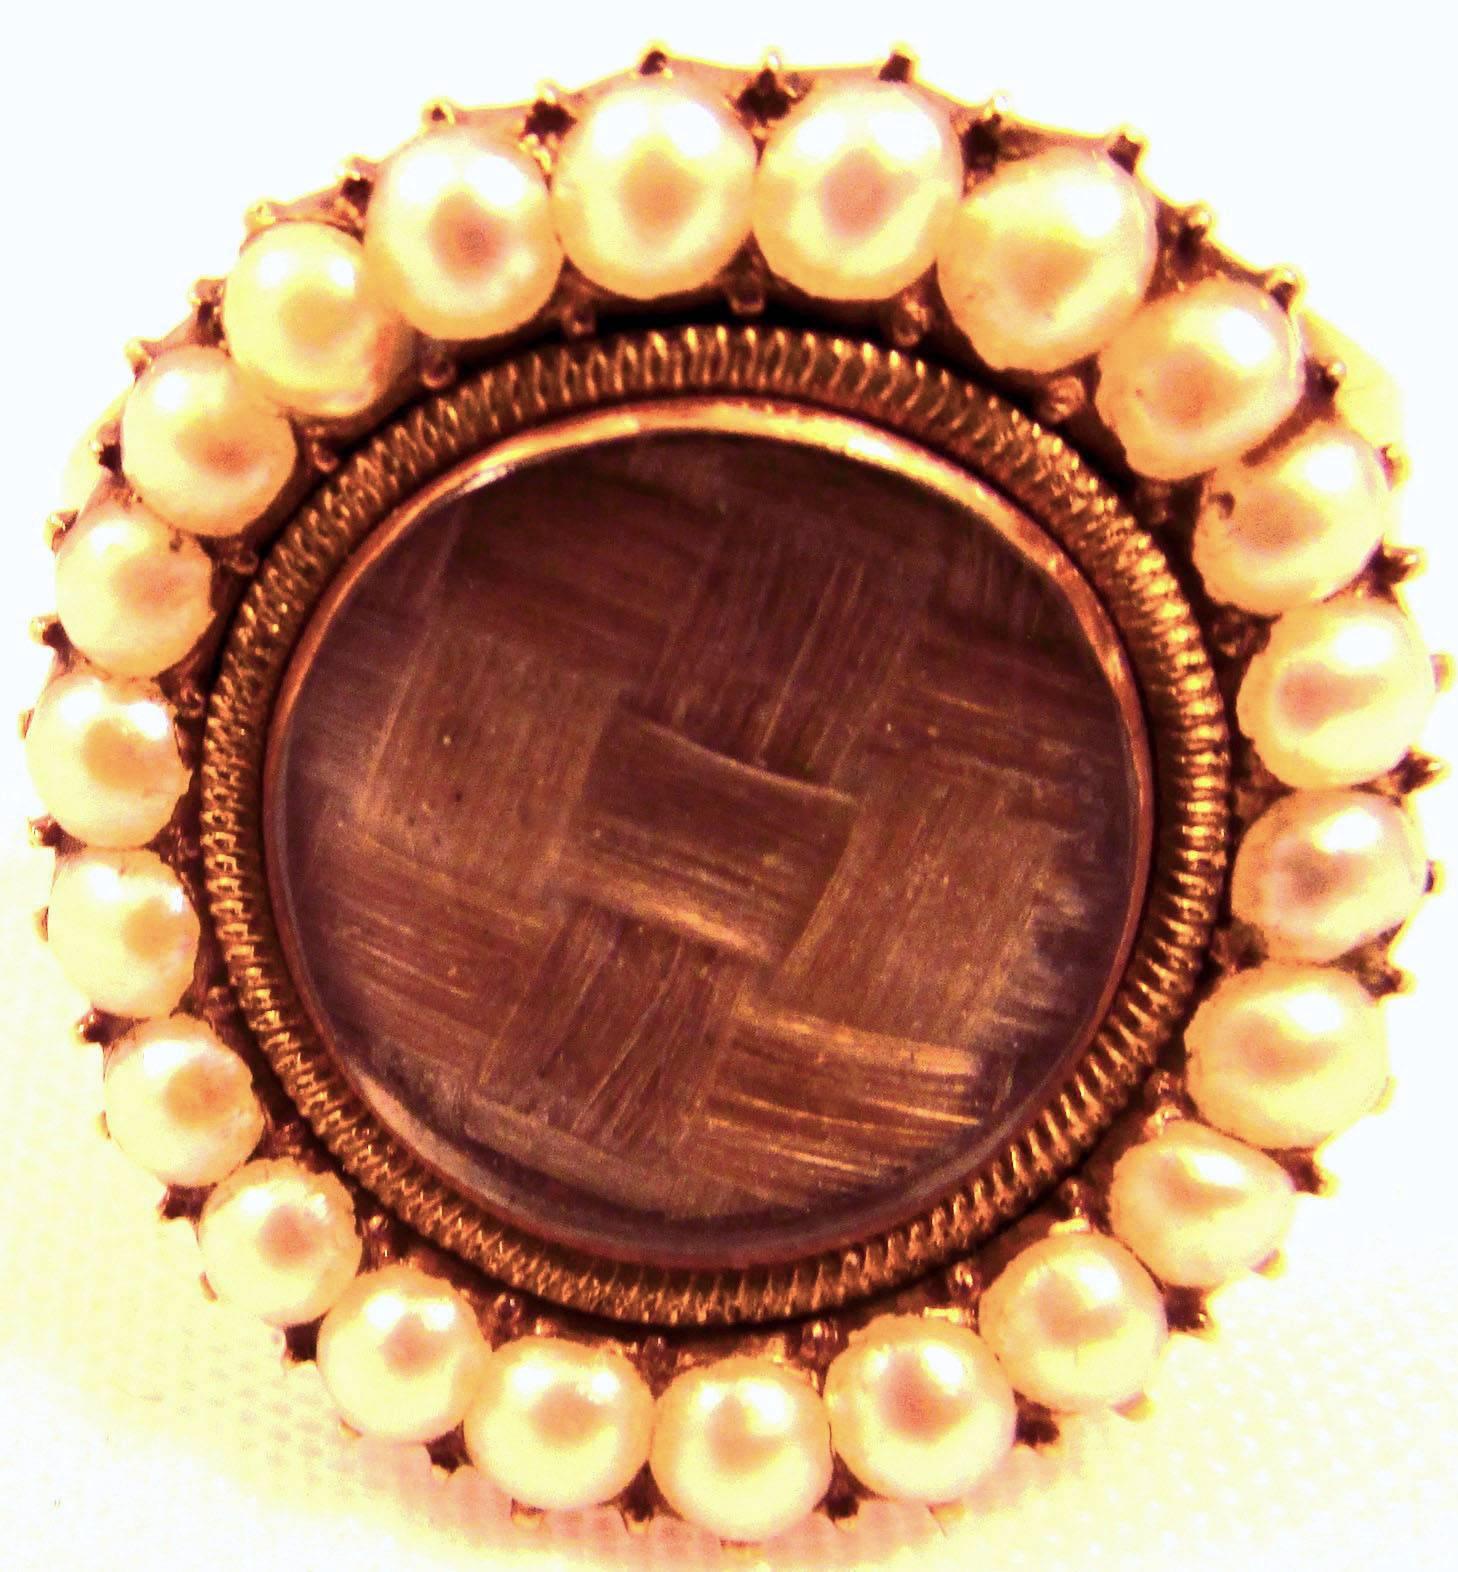 Ravissante bague géorgienne en perles naturelles et cheveux tressés, sertie en or jaune 12 carats. Les différentes nuances de cheveux indiquent probablement qu'ils proviennent d'un mari et d'une femme, un symbole de leur unité. Un merveilleux